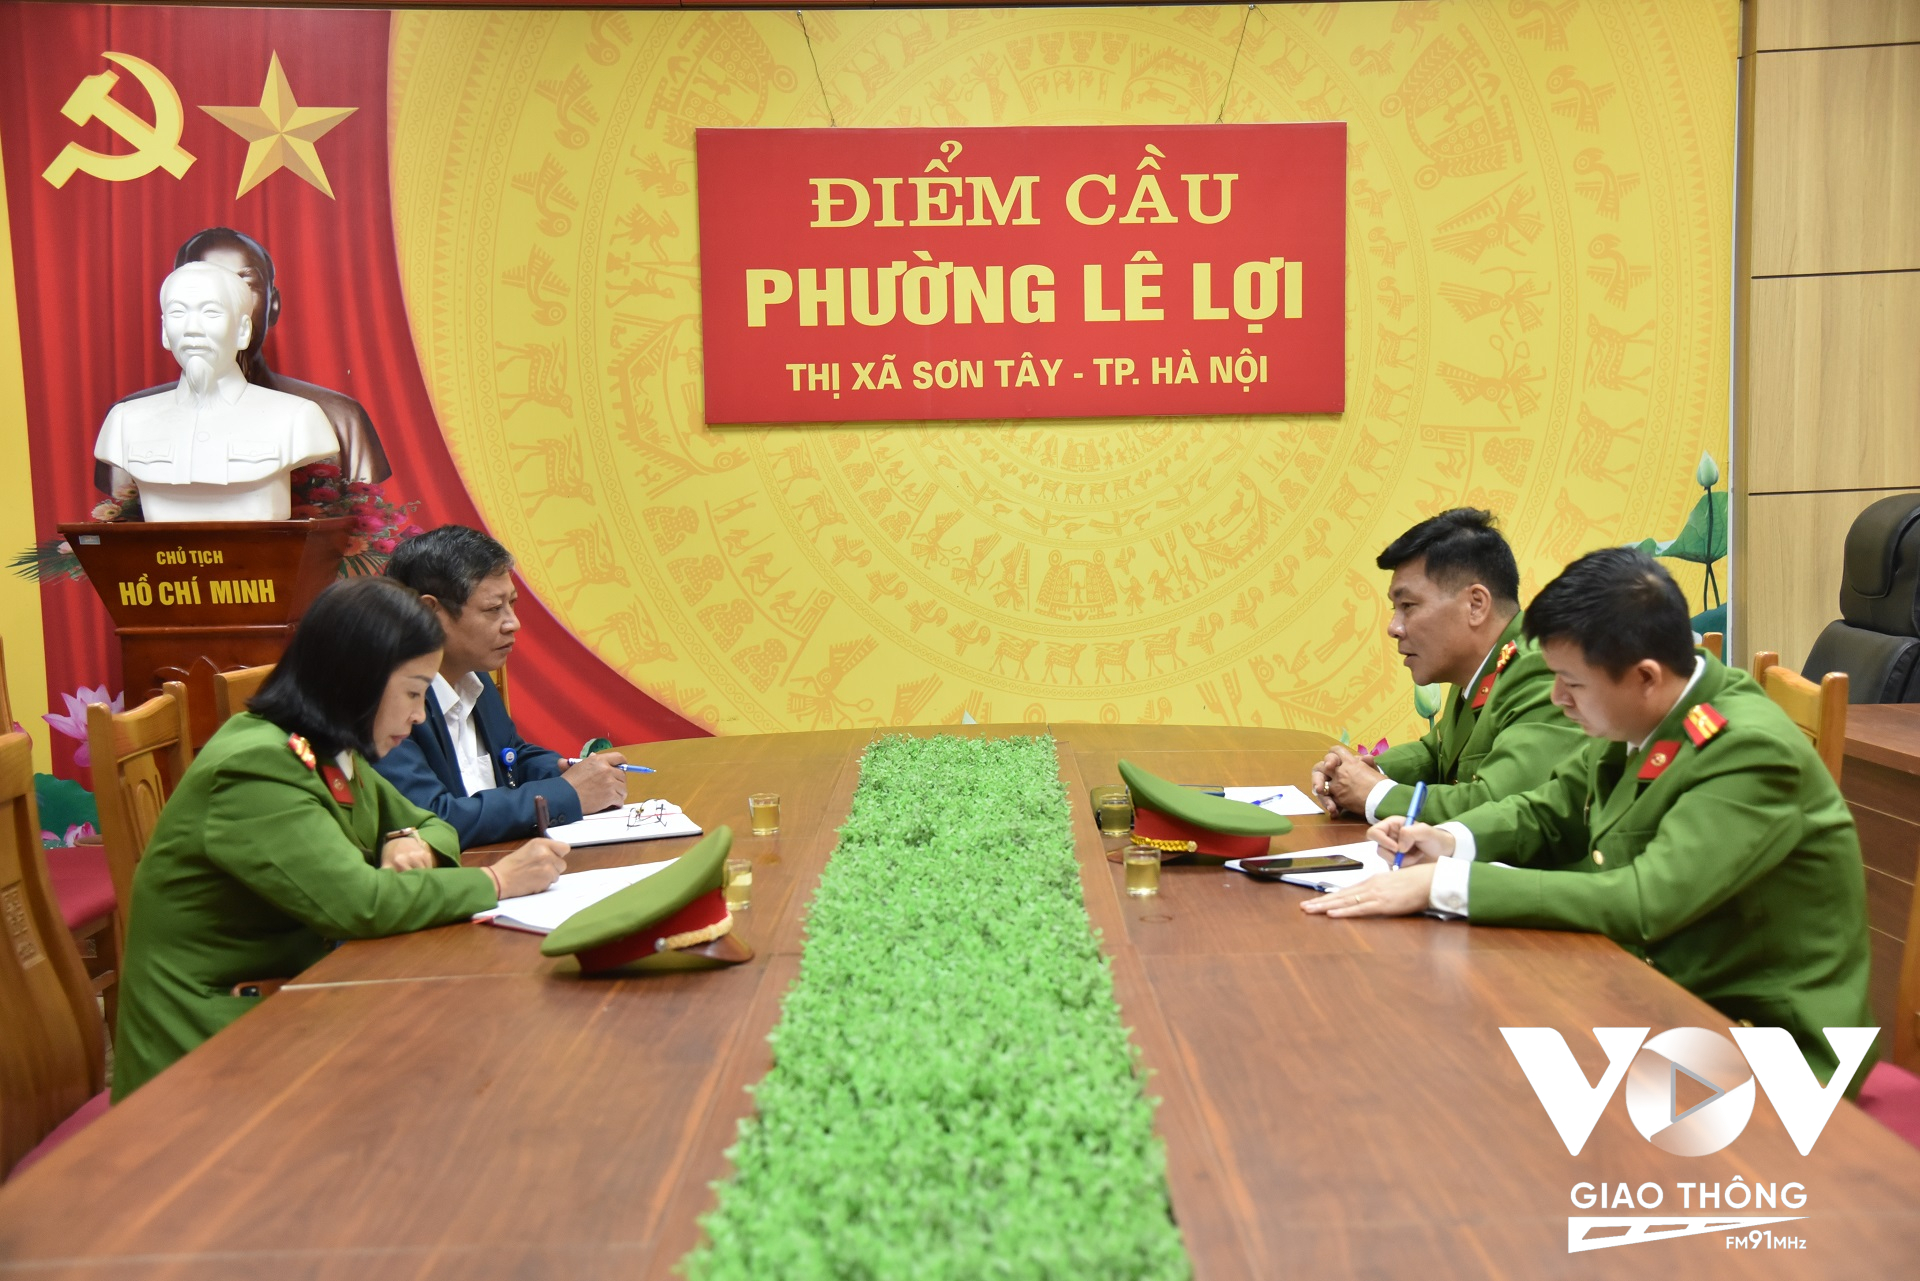 Đội Cảnh sát PCCC&CNCH Công an thị xã Sơn Tây làm việc với lãnh đạo phường Lê Lợi (thị xã Sơn Tây)